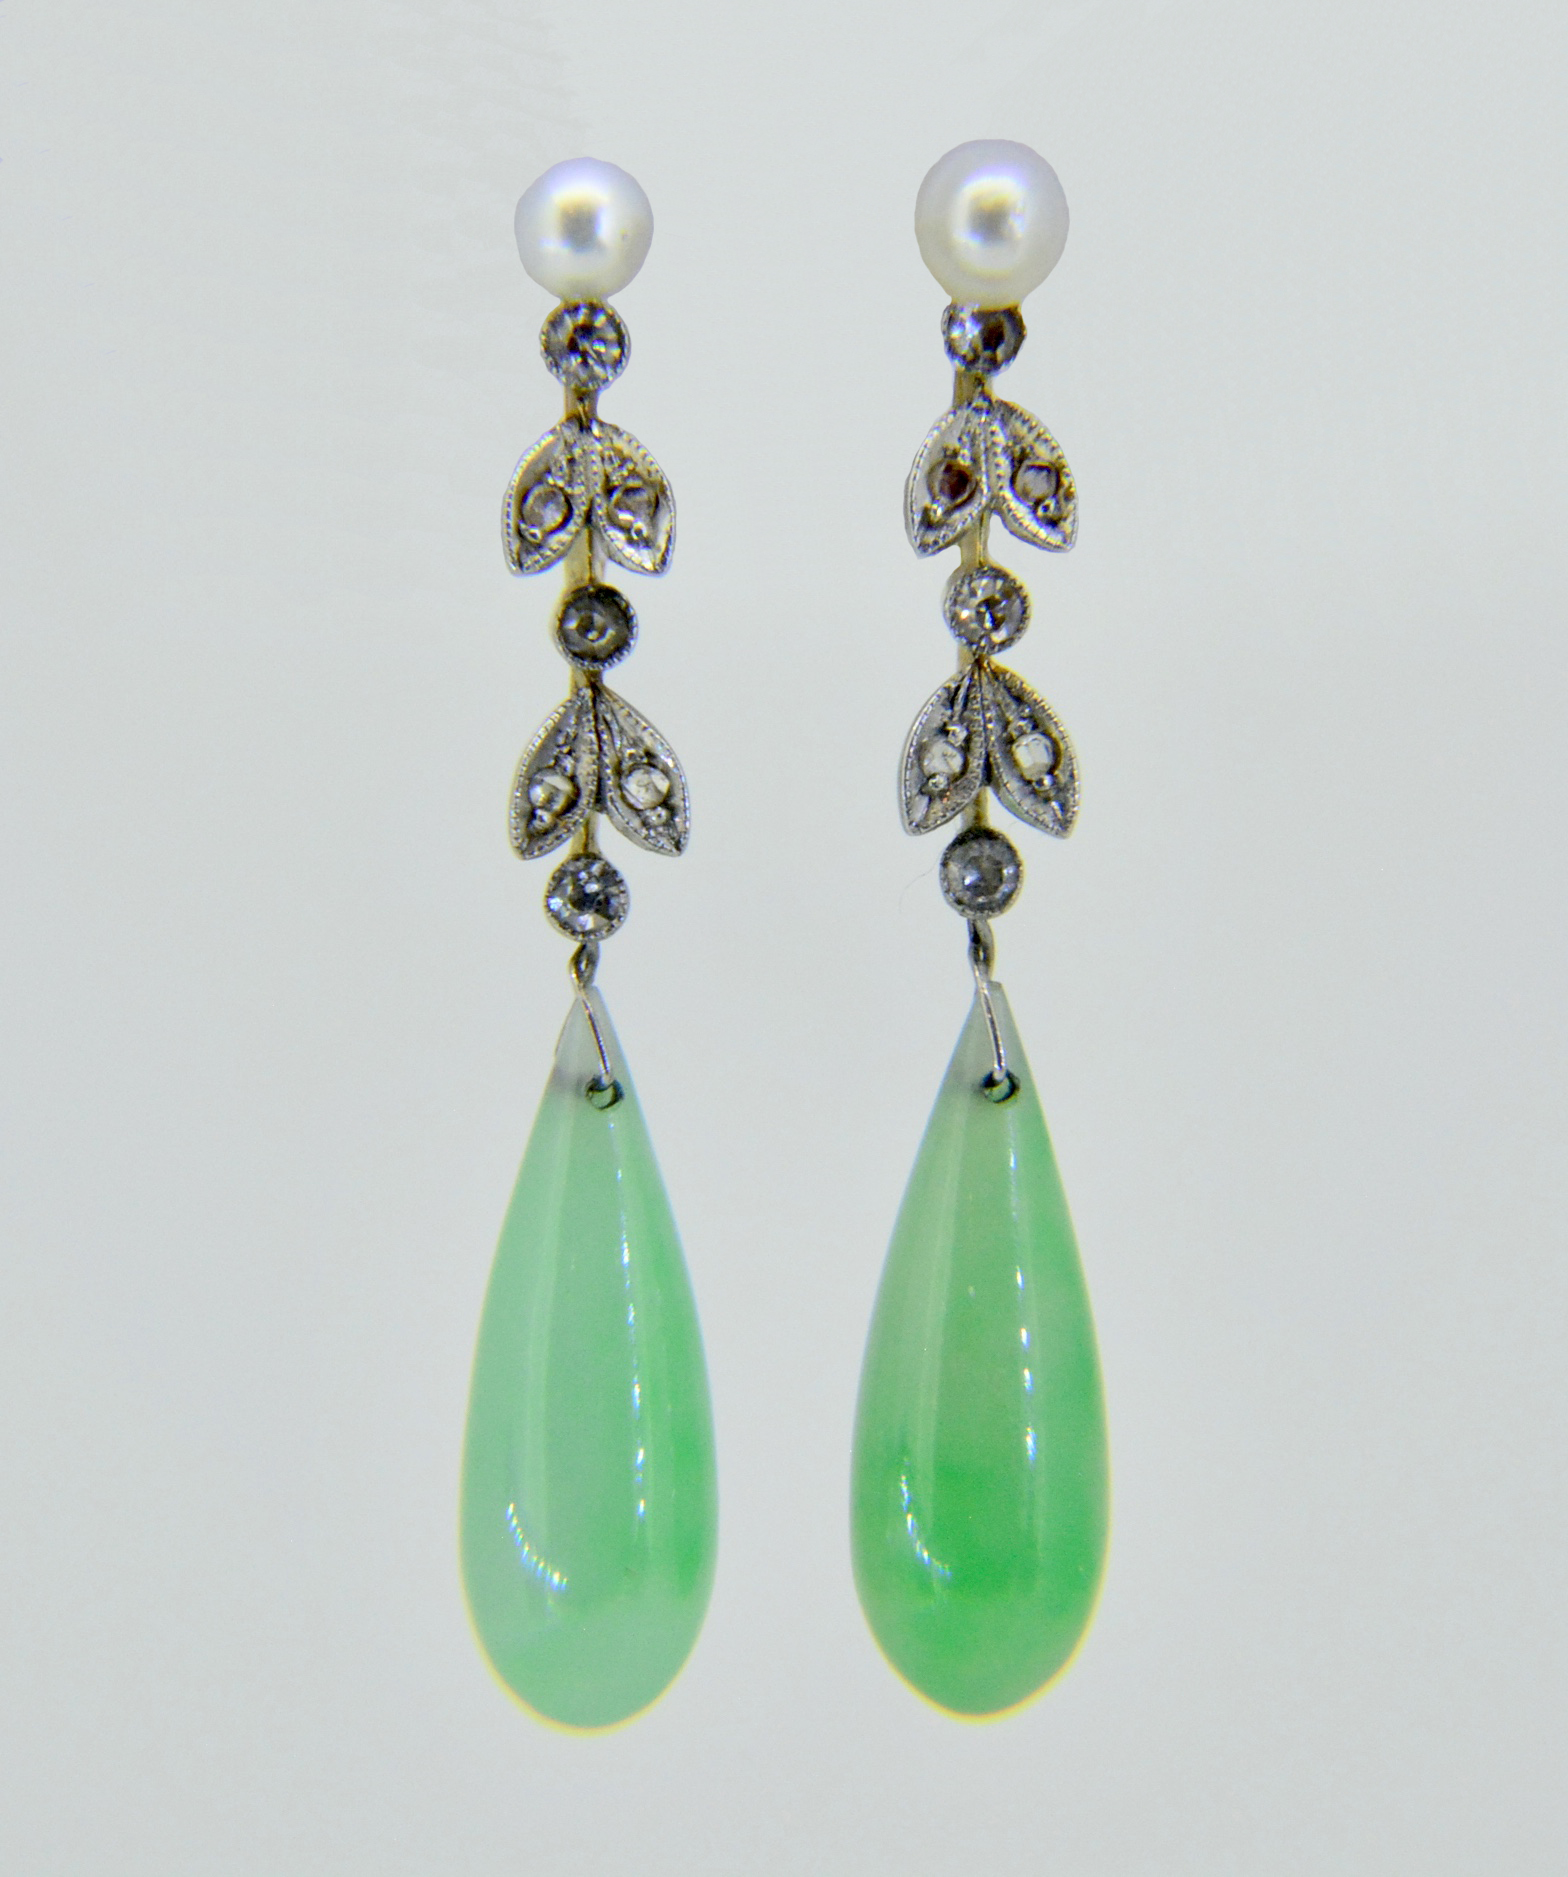 Share 75+ jade drop earrings uk super hot - esthdonghoadian